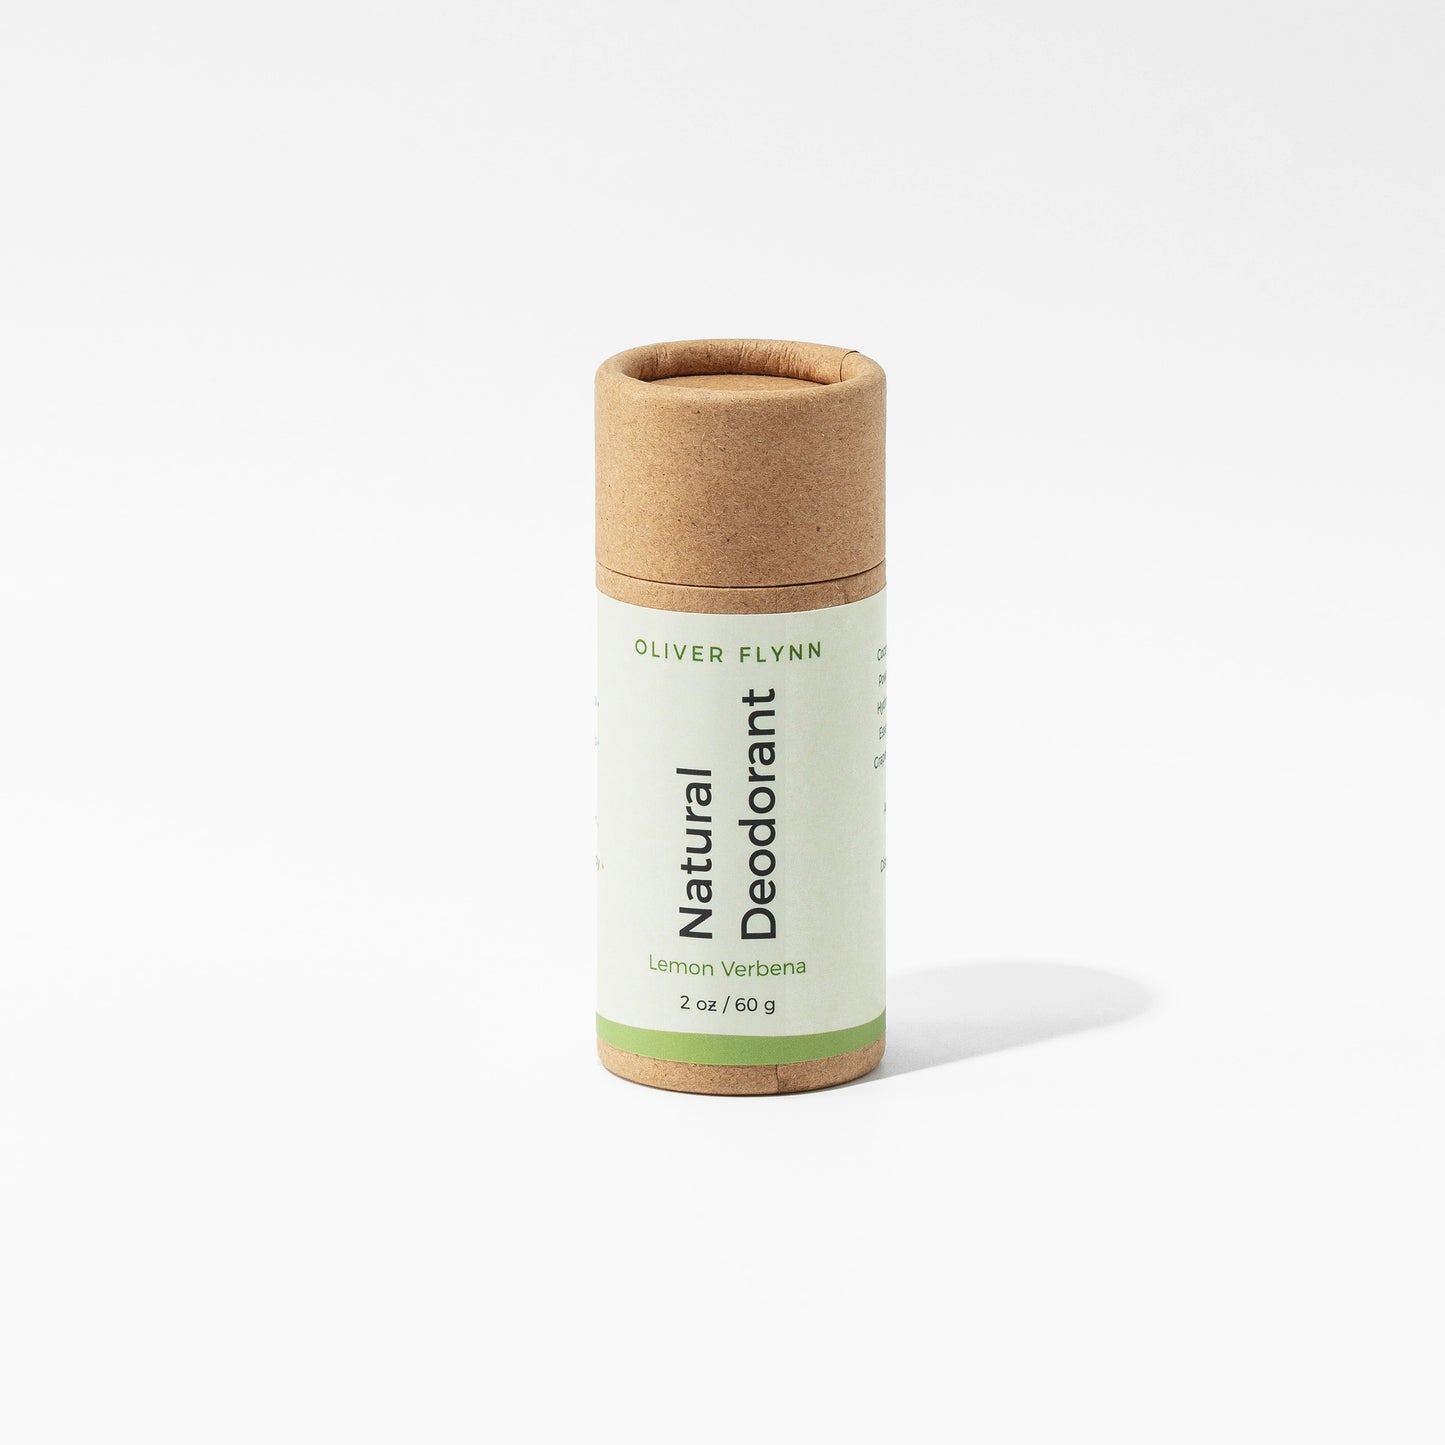 Natural Deodorant for Sensitive Skin